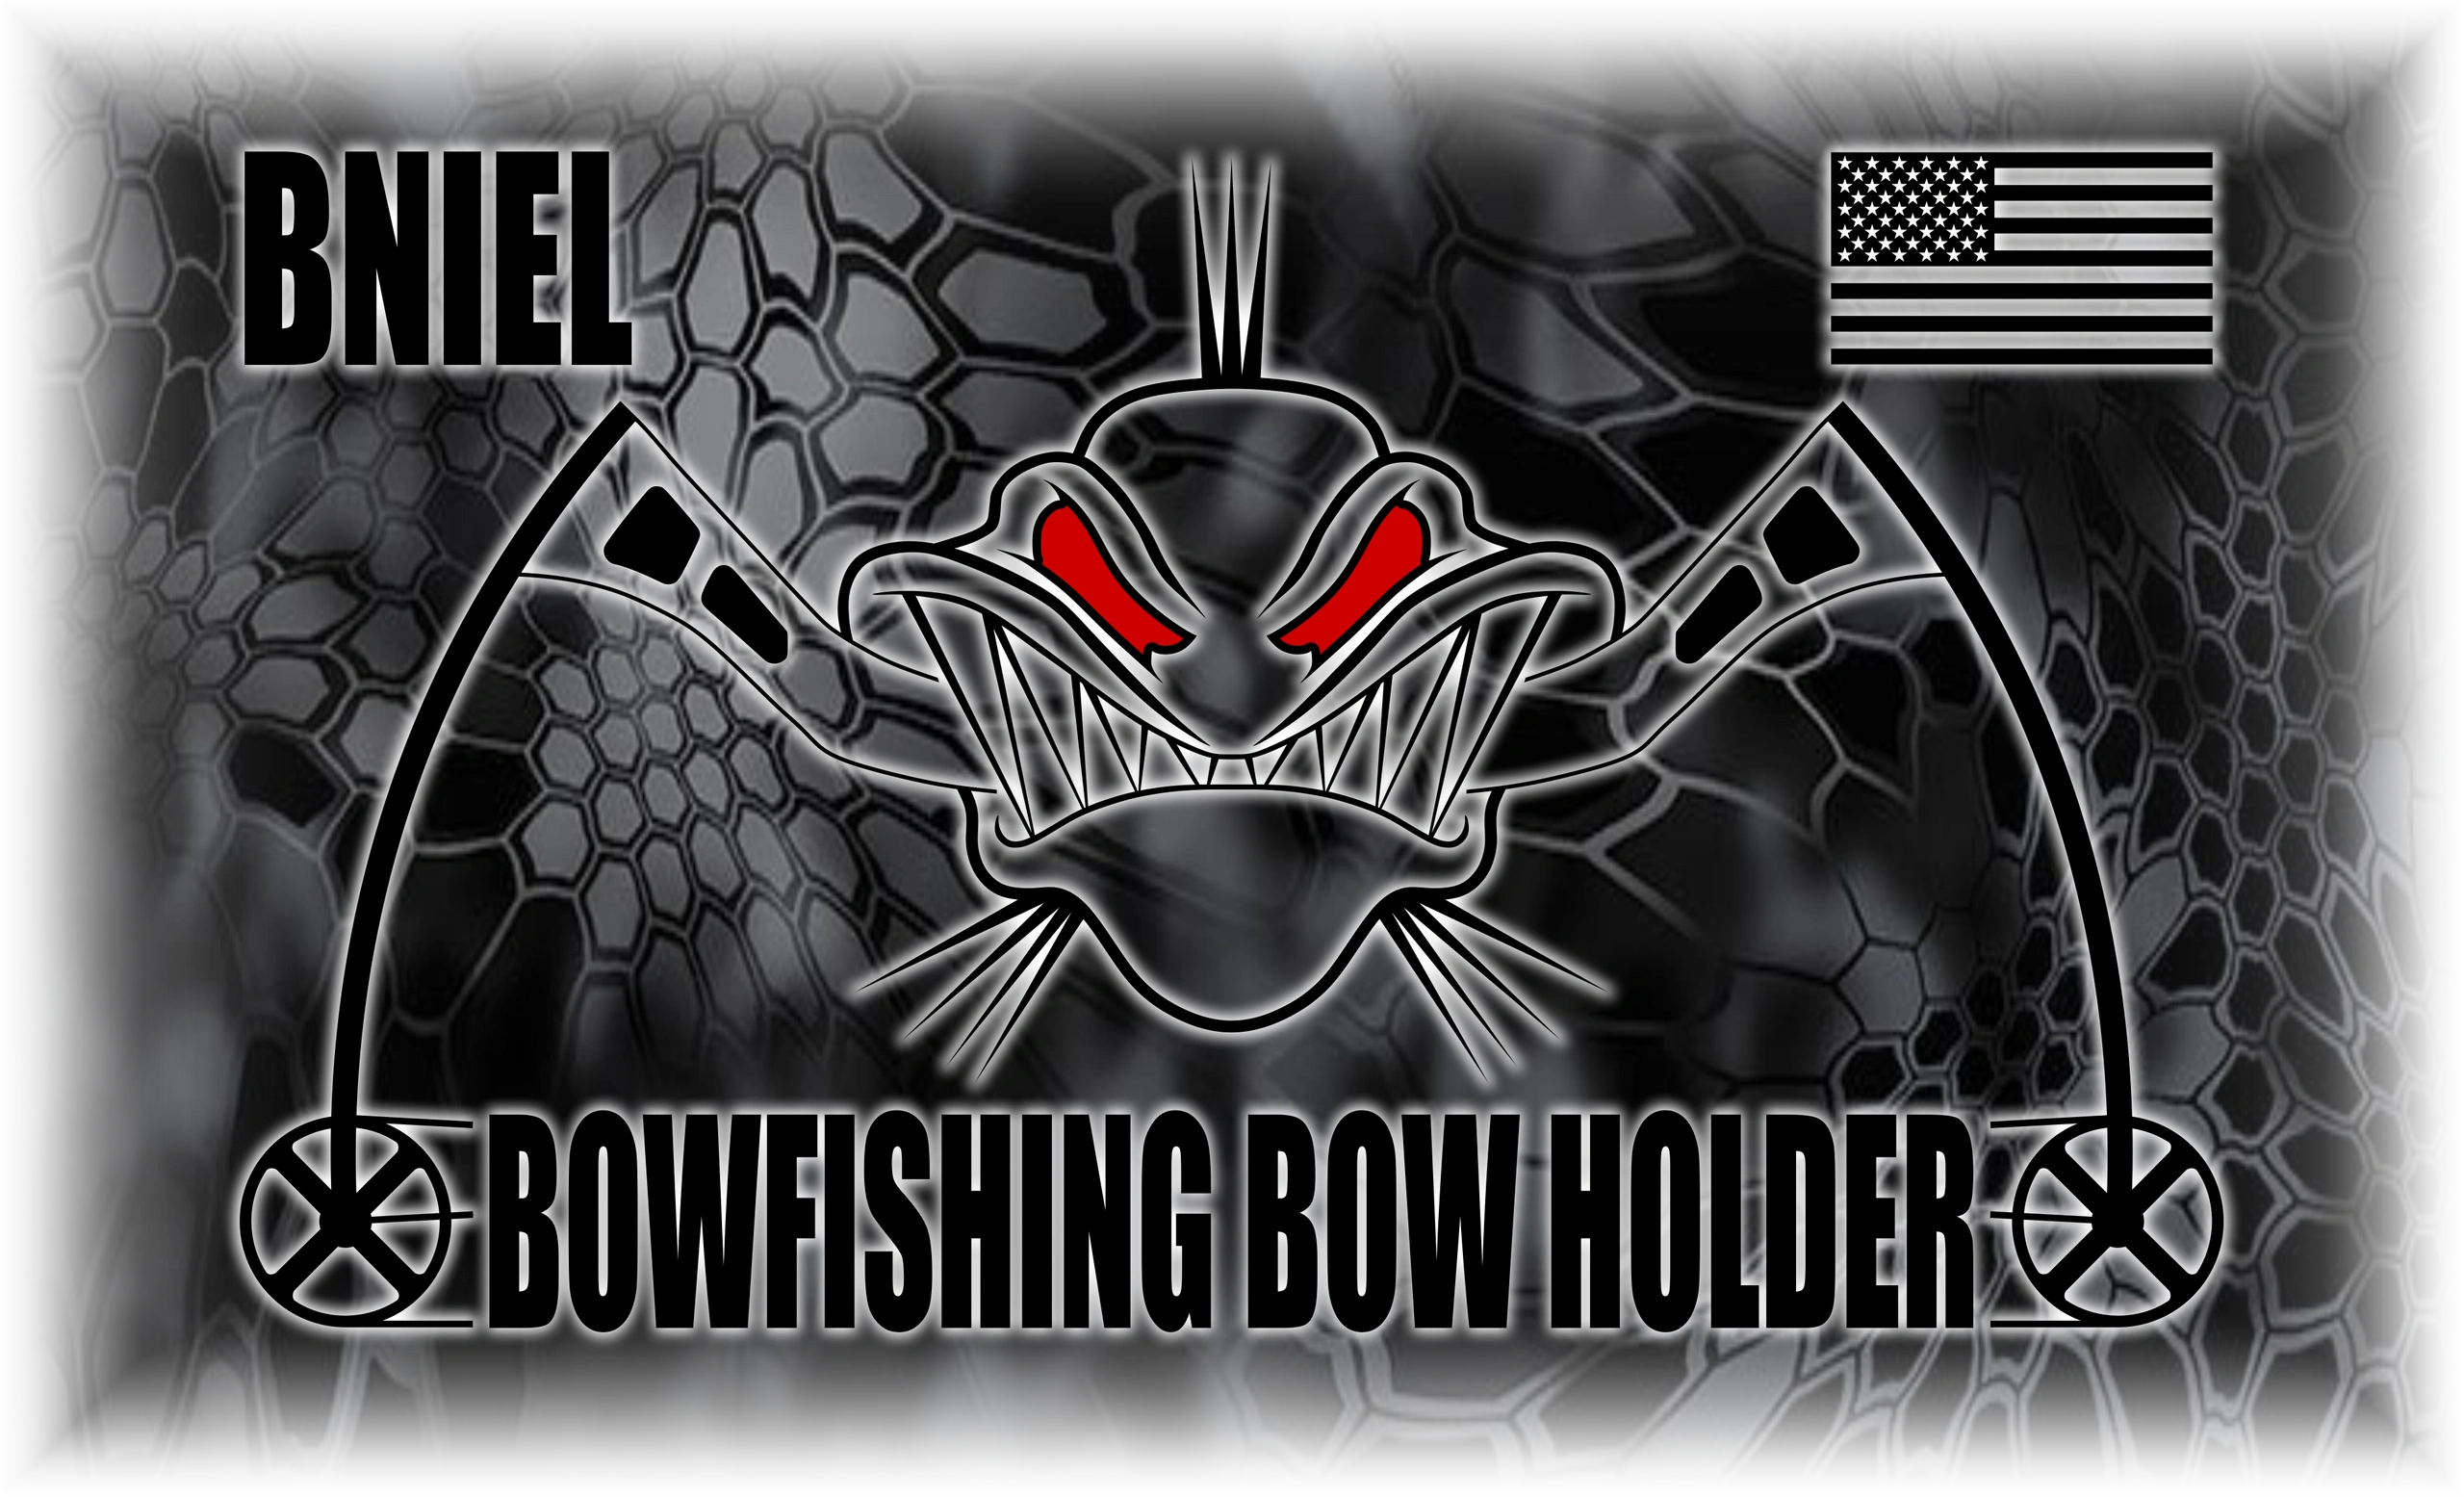 bowfishing logos